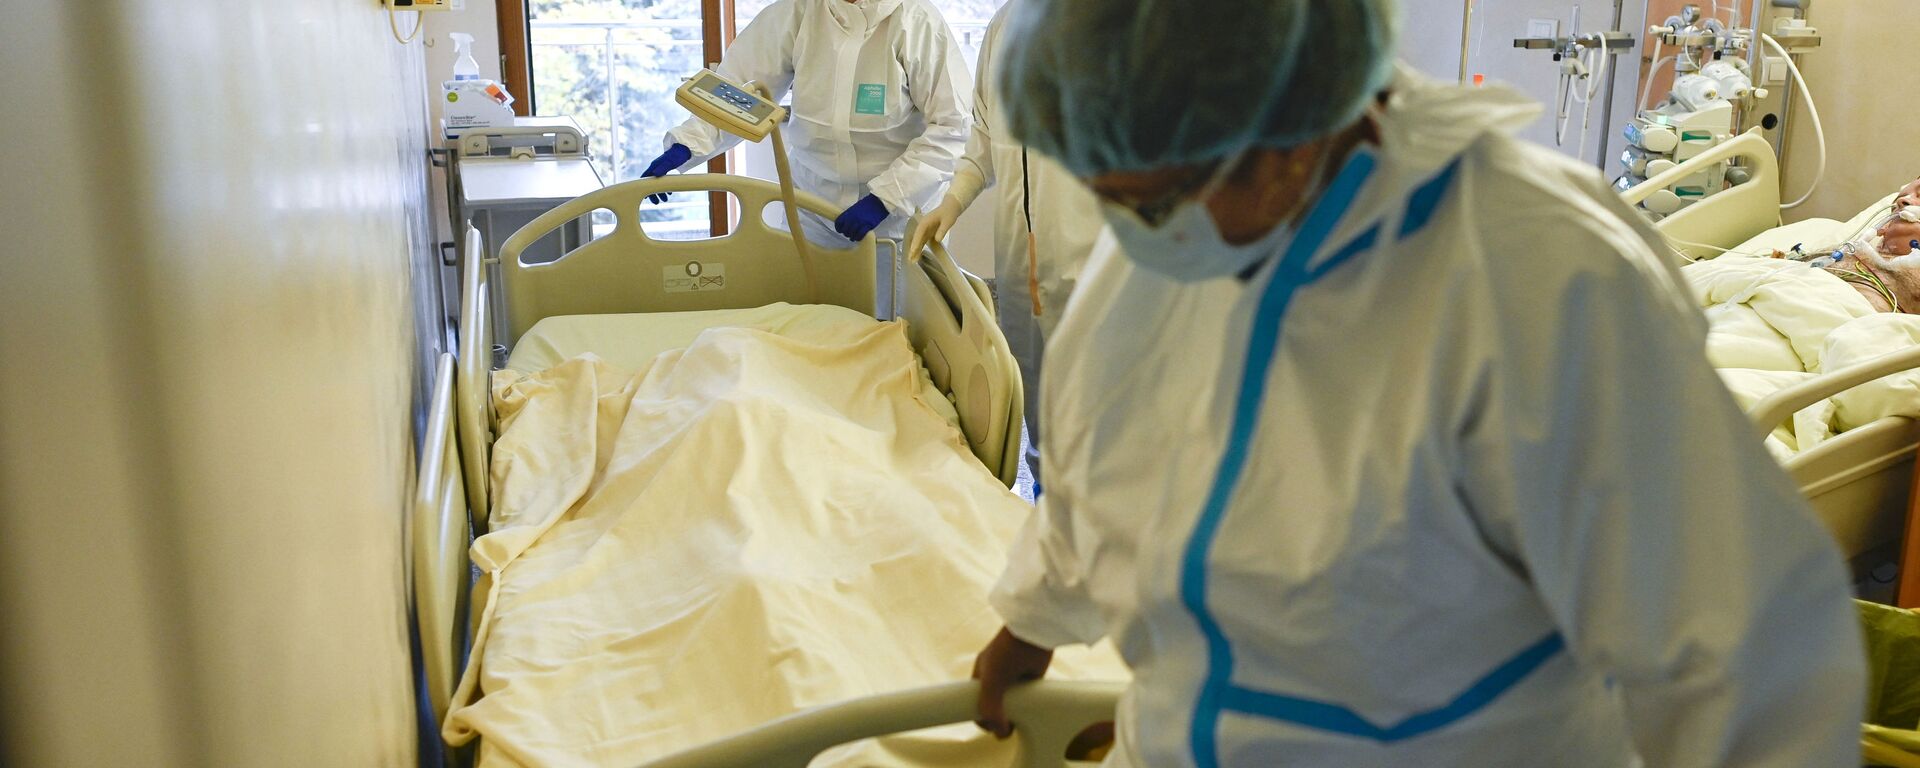 Медики в защитных костюмах вывозят из палаты реанимации тело скончавшегося от коронавируса пациента  - Sputnik Казахстан, 1920, 25.02.2022